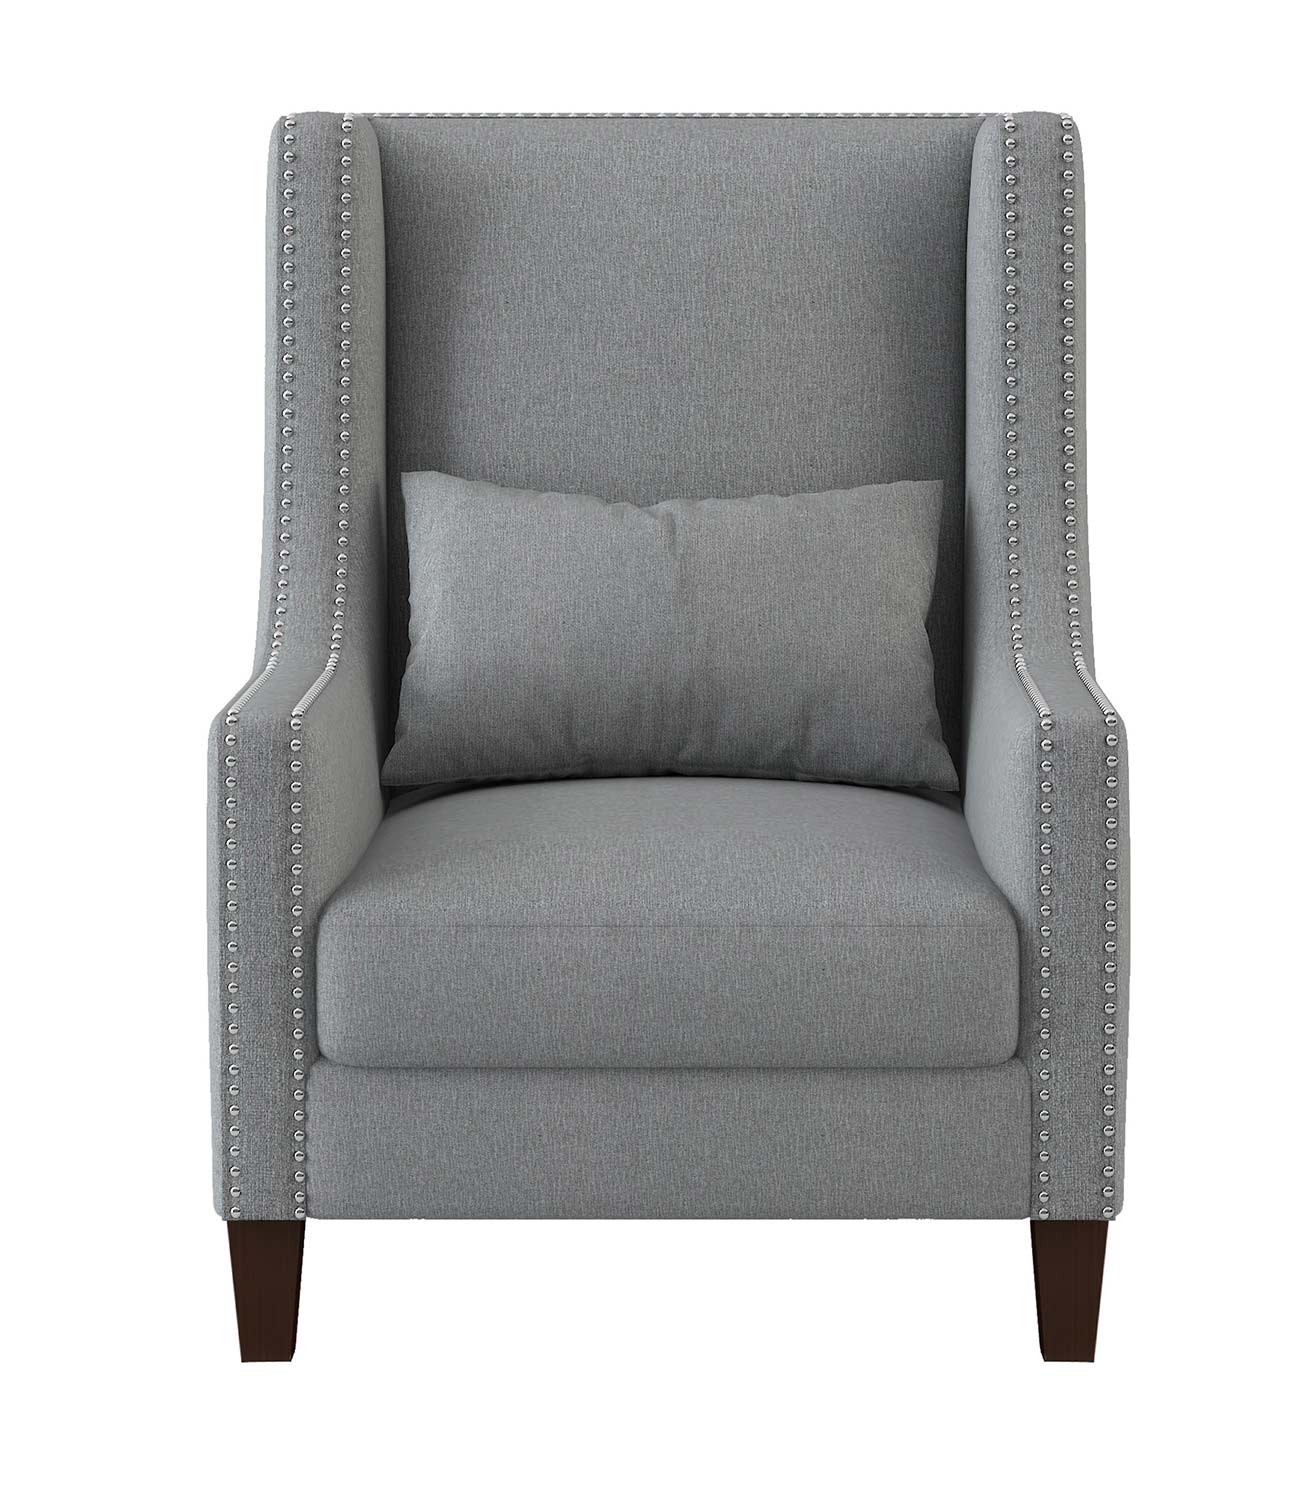 Homelegance Keller Accent Chair - Light gray